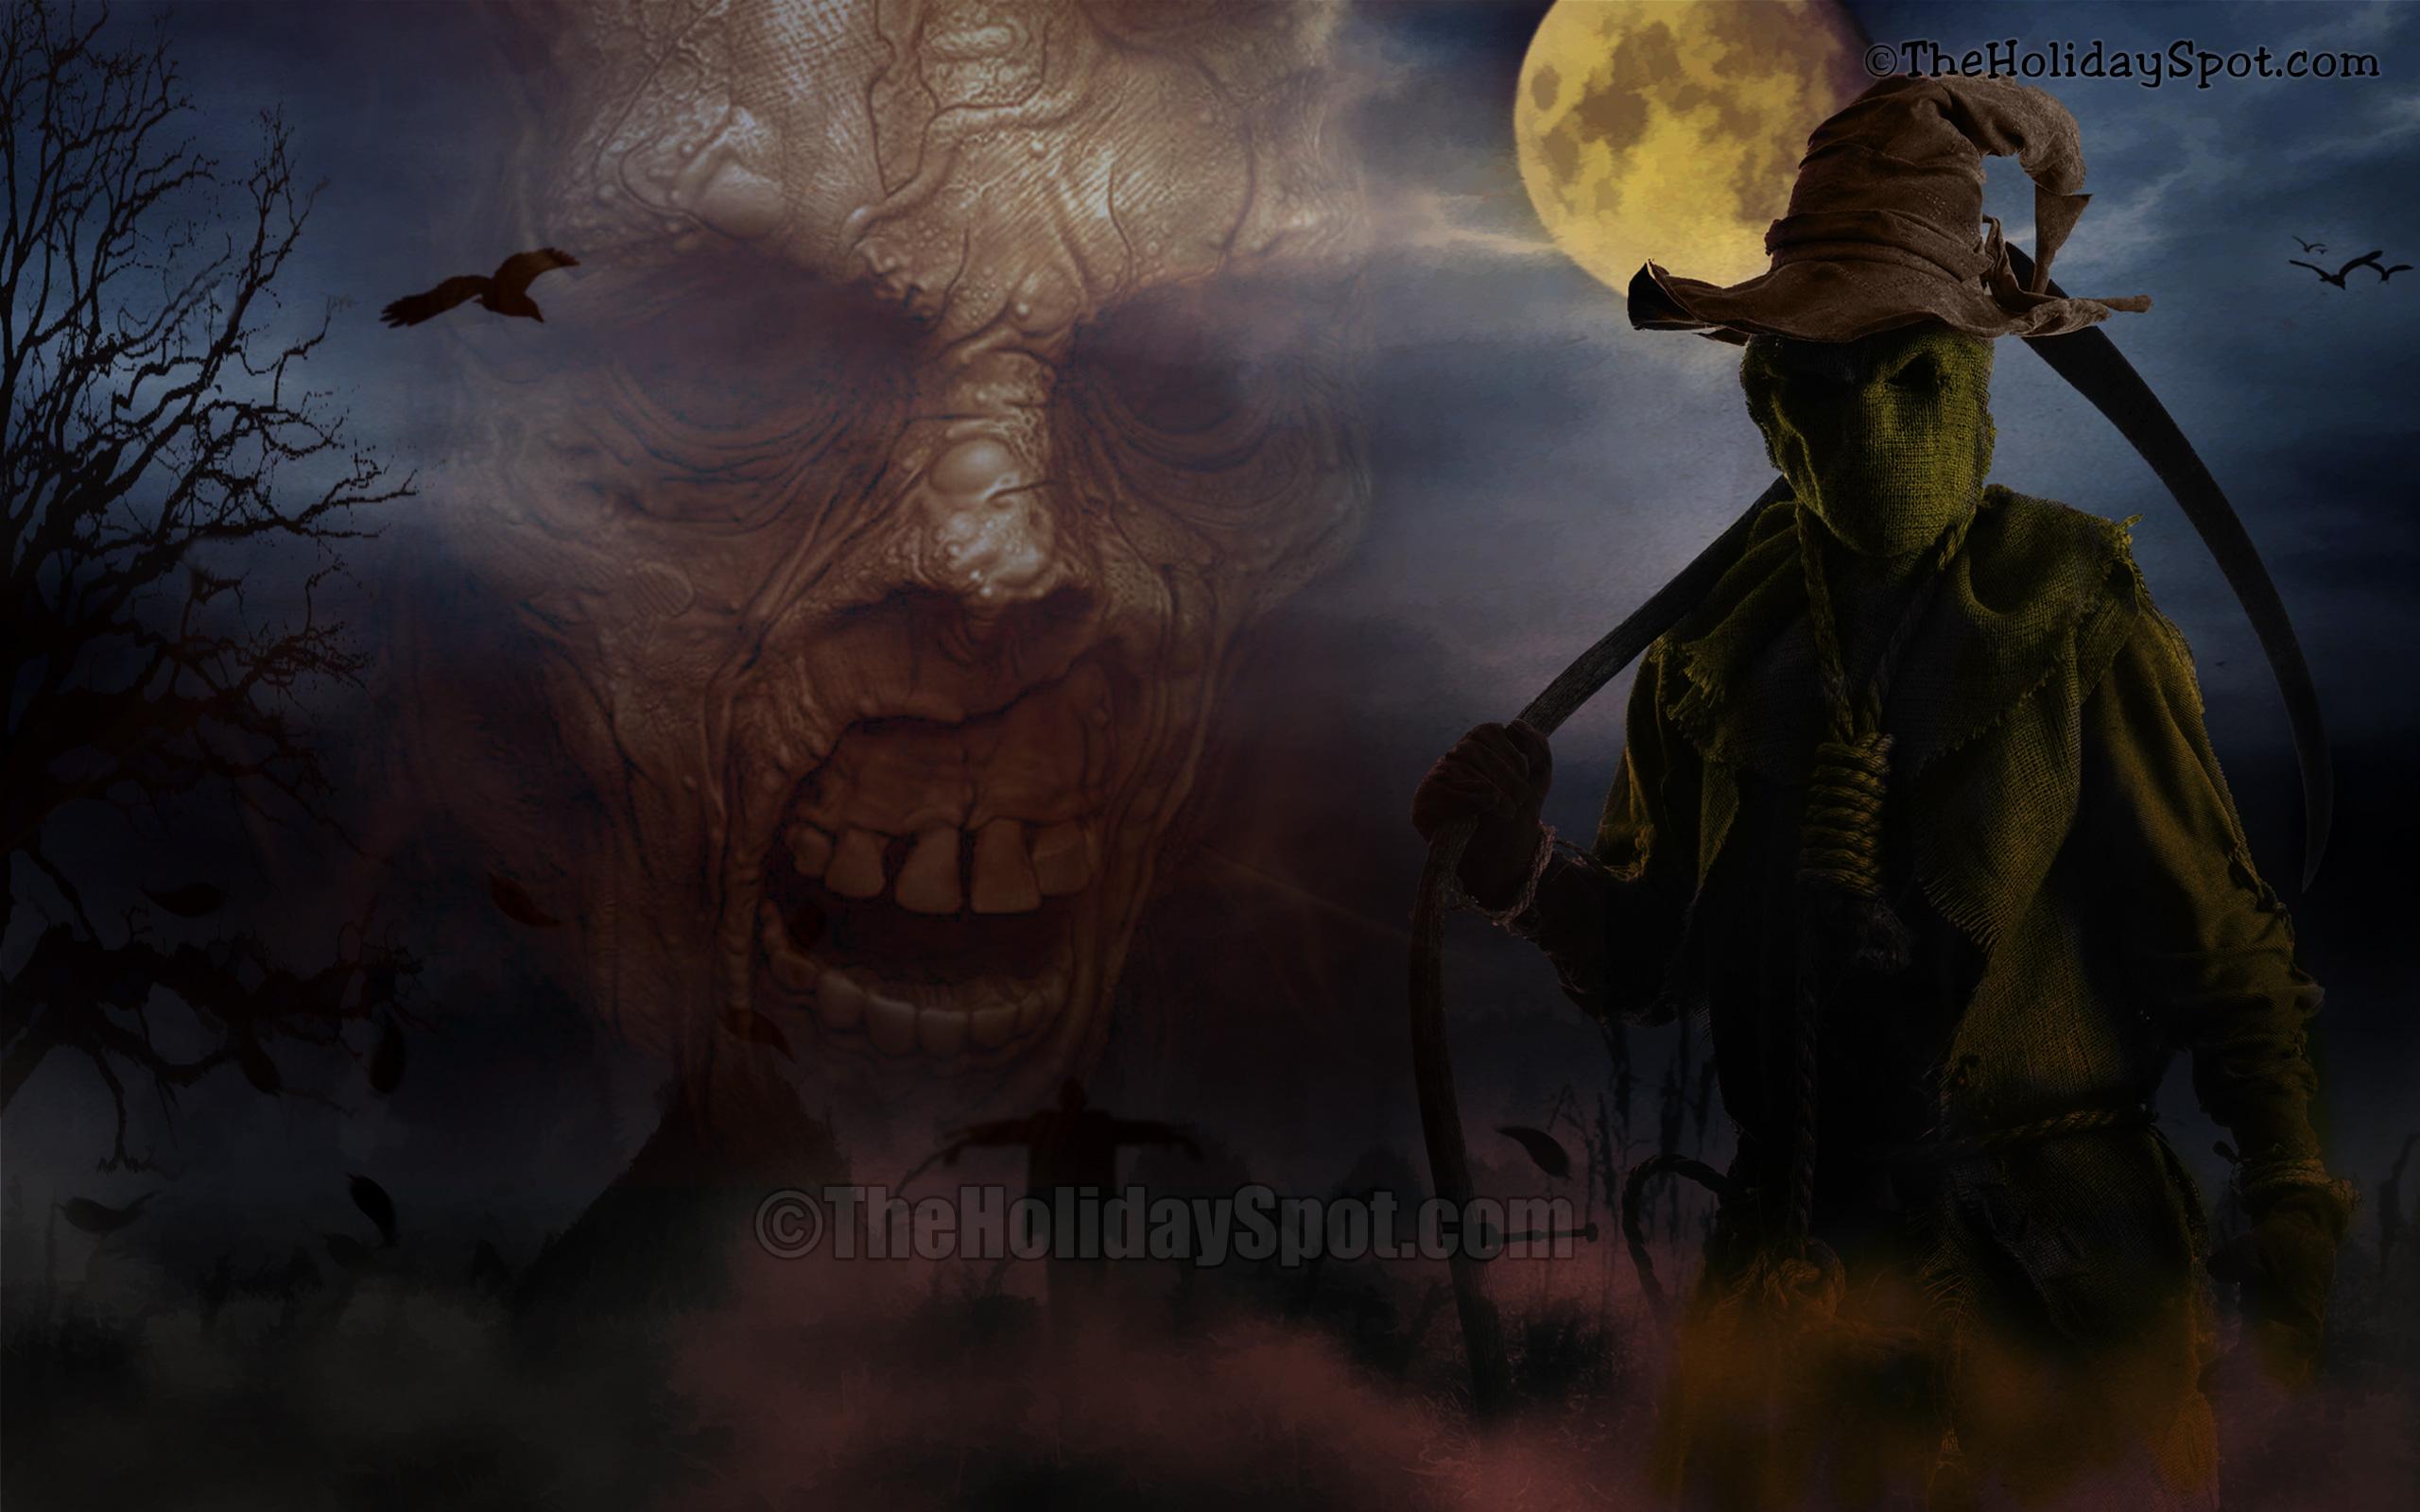 Happy Halloween HD Wallpaper. Best Halloween Image. Free